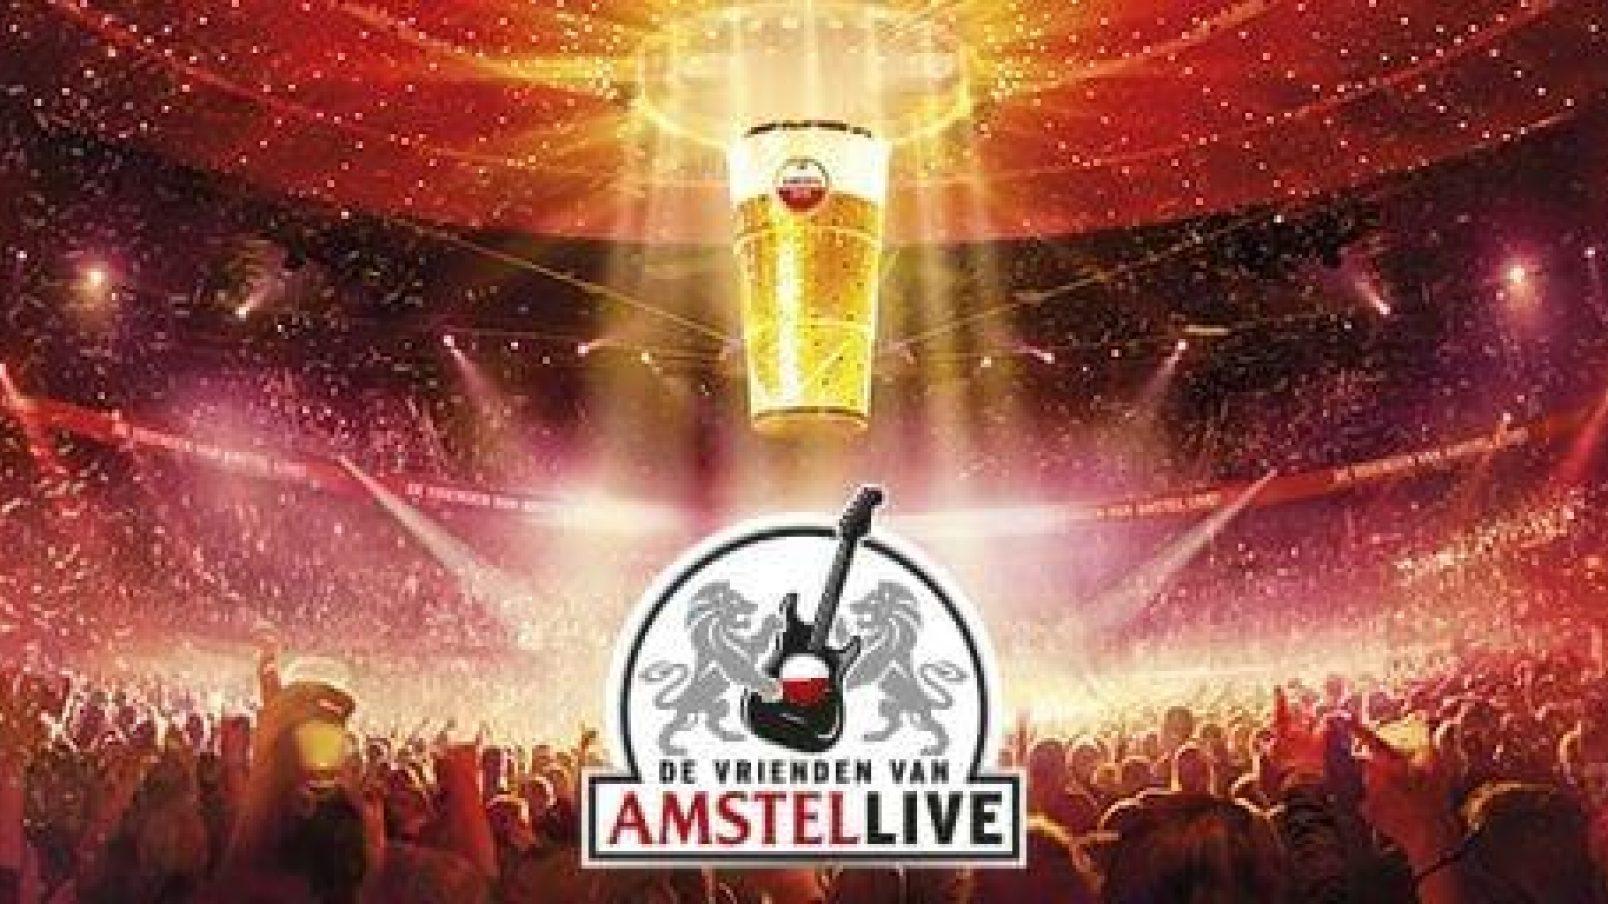 De Vrienden van Amstel LIVE! Rotterdam Ahoy 2022